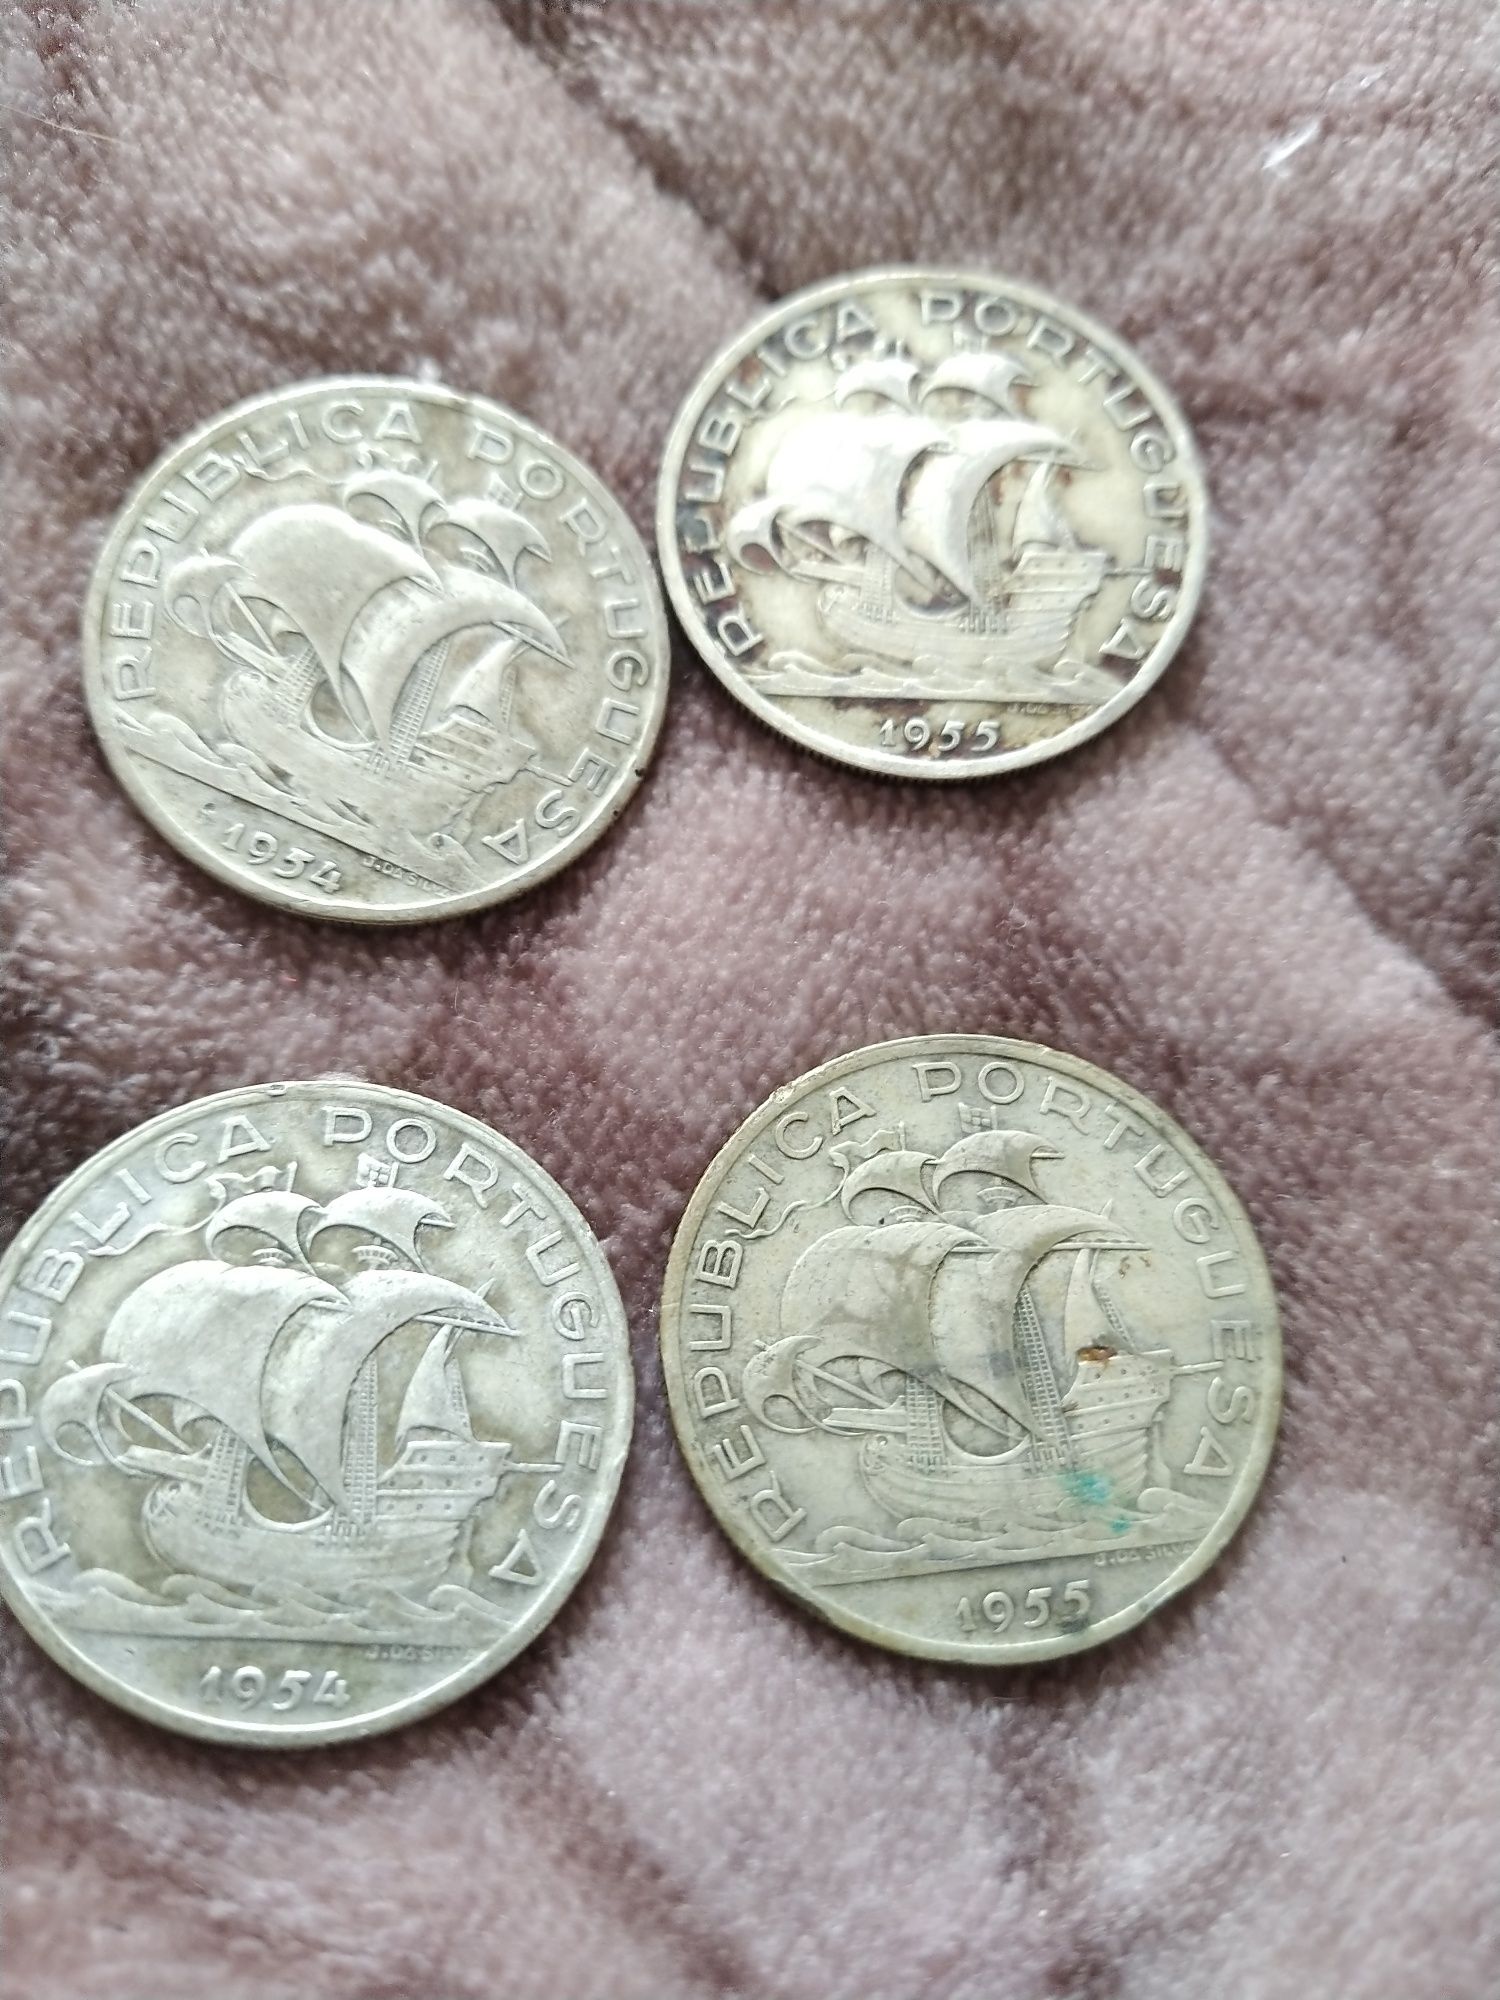 Vendo moedas de 10 escudos antigas